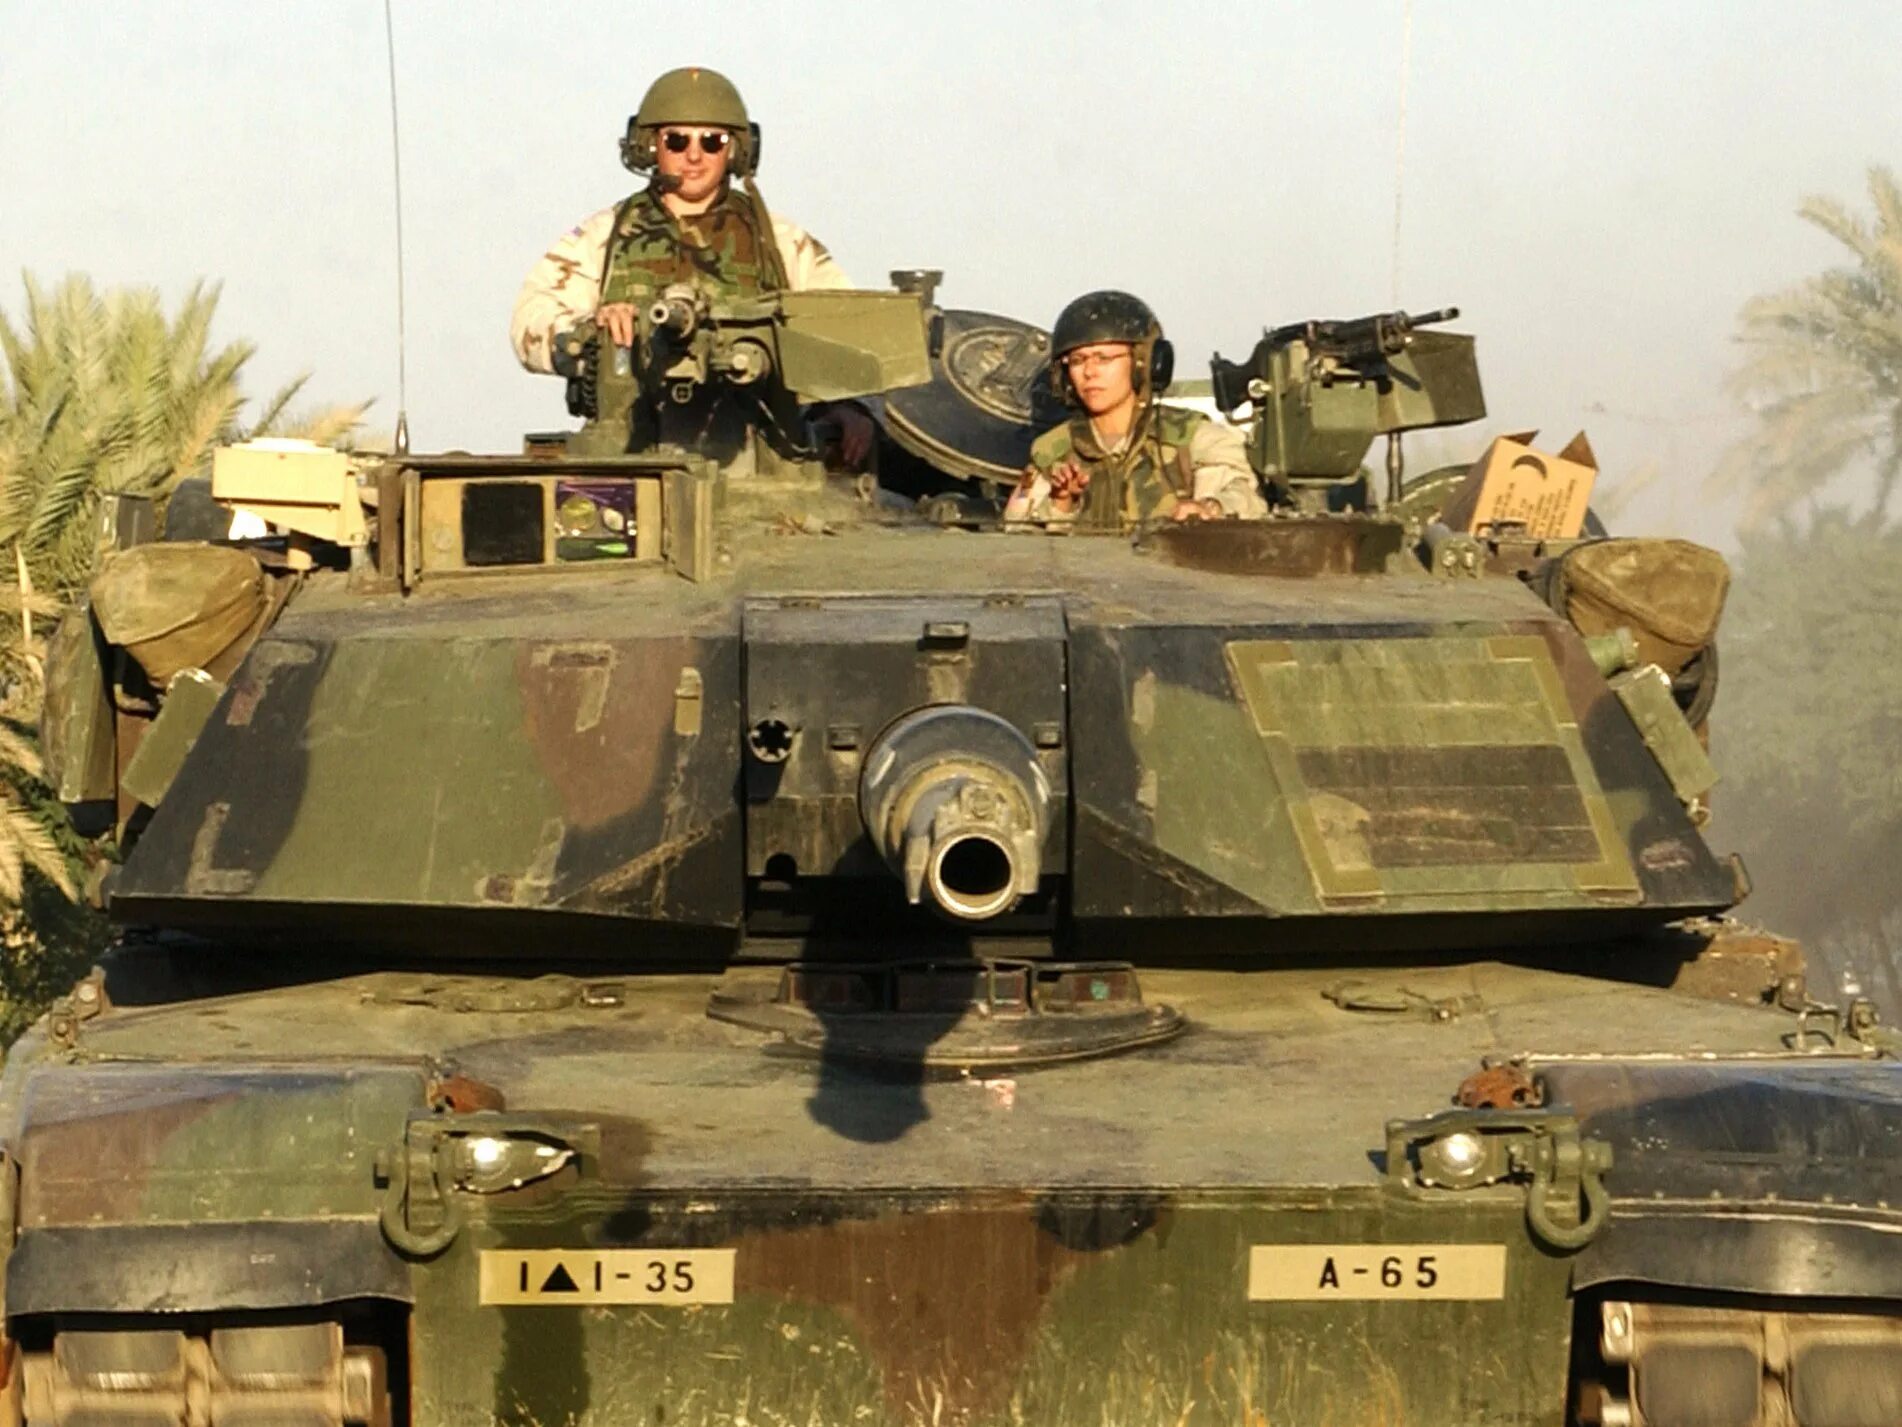 Еще один абрамс. M1 Abrams. Танкист м1 Абрамс. M1 Abrams в Ираке. Экипаж танка Абрамс.